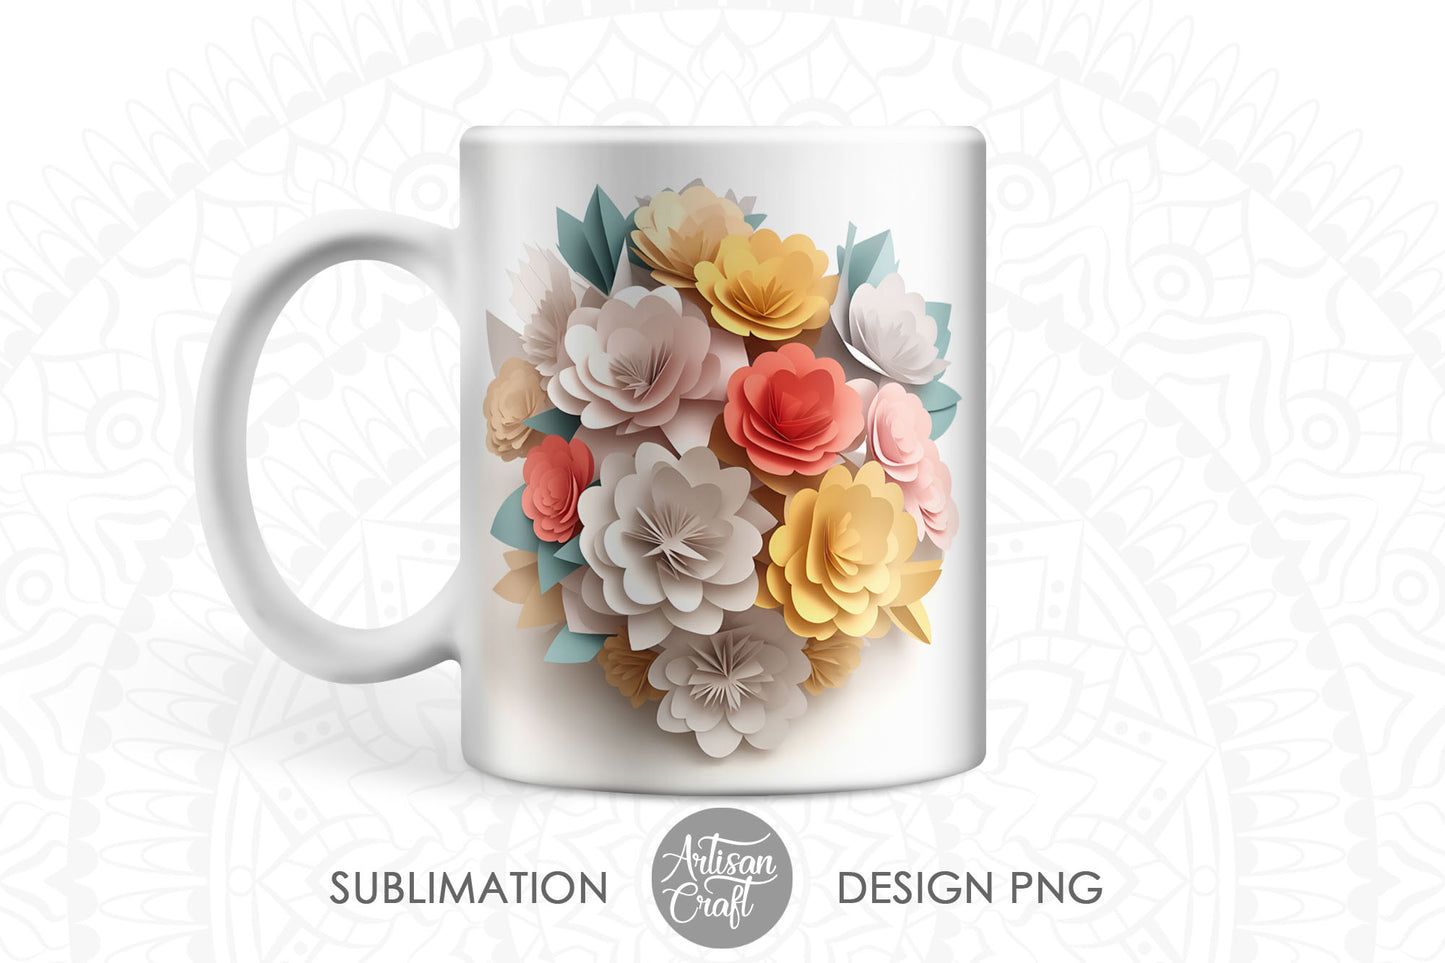 3D Flower mug wrap, 11oz mug, sublimation design, 3D paper flower bouquet